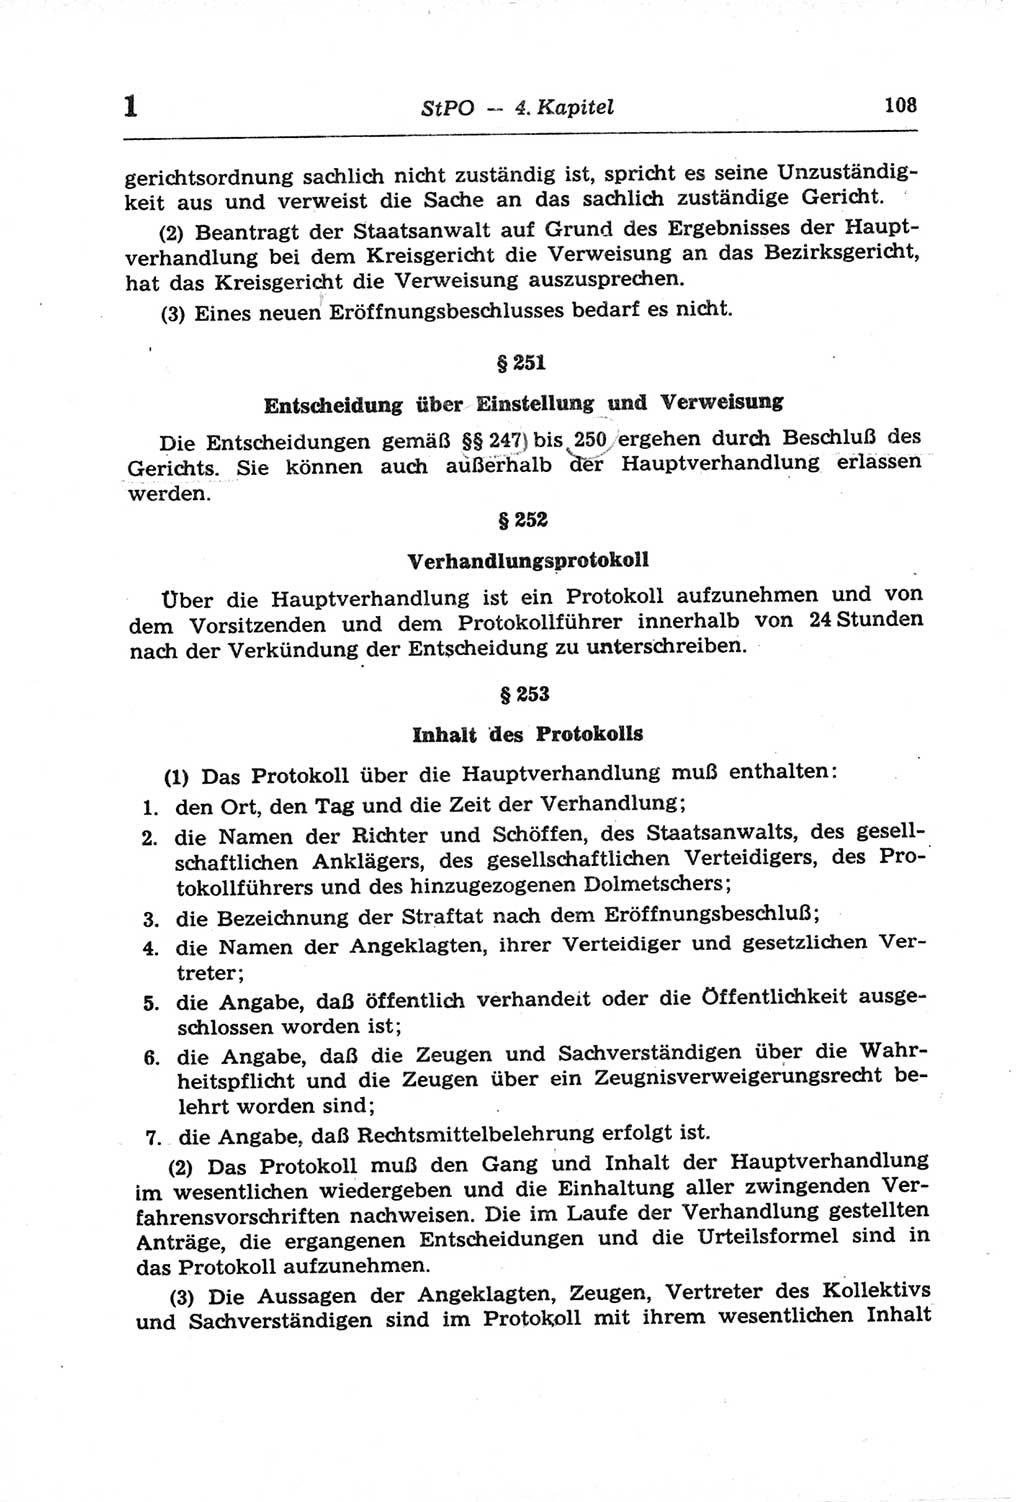 Strafprozeßordnung (StPO) der Deutschen Demokratischen Republik (DDR) und angrenzende Gesetze und Bestimmungen 1968, Seite 108 (StPO Ges. Bstgn. DDR 1968, S. 108)